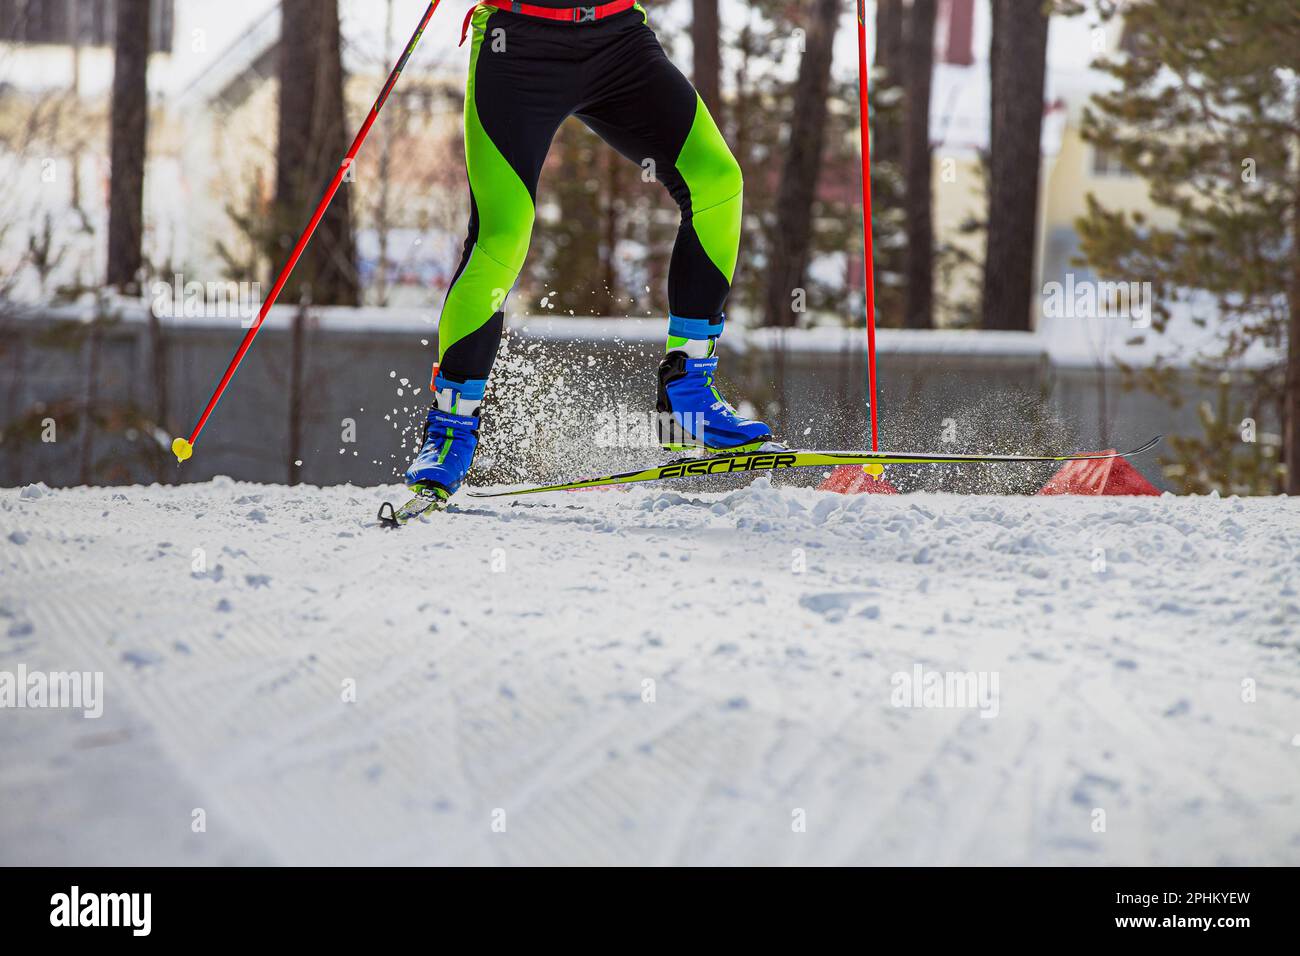 Skieur mâle en montée en ski de fond, ski de course Fischer, chaussures de ski de Spine, sports olympiques d'hiver Banque D'Images